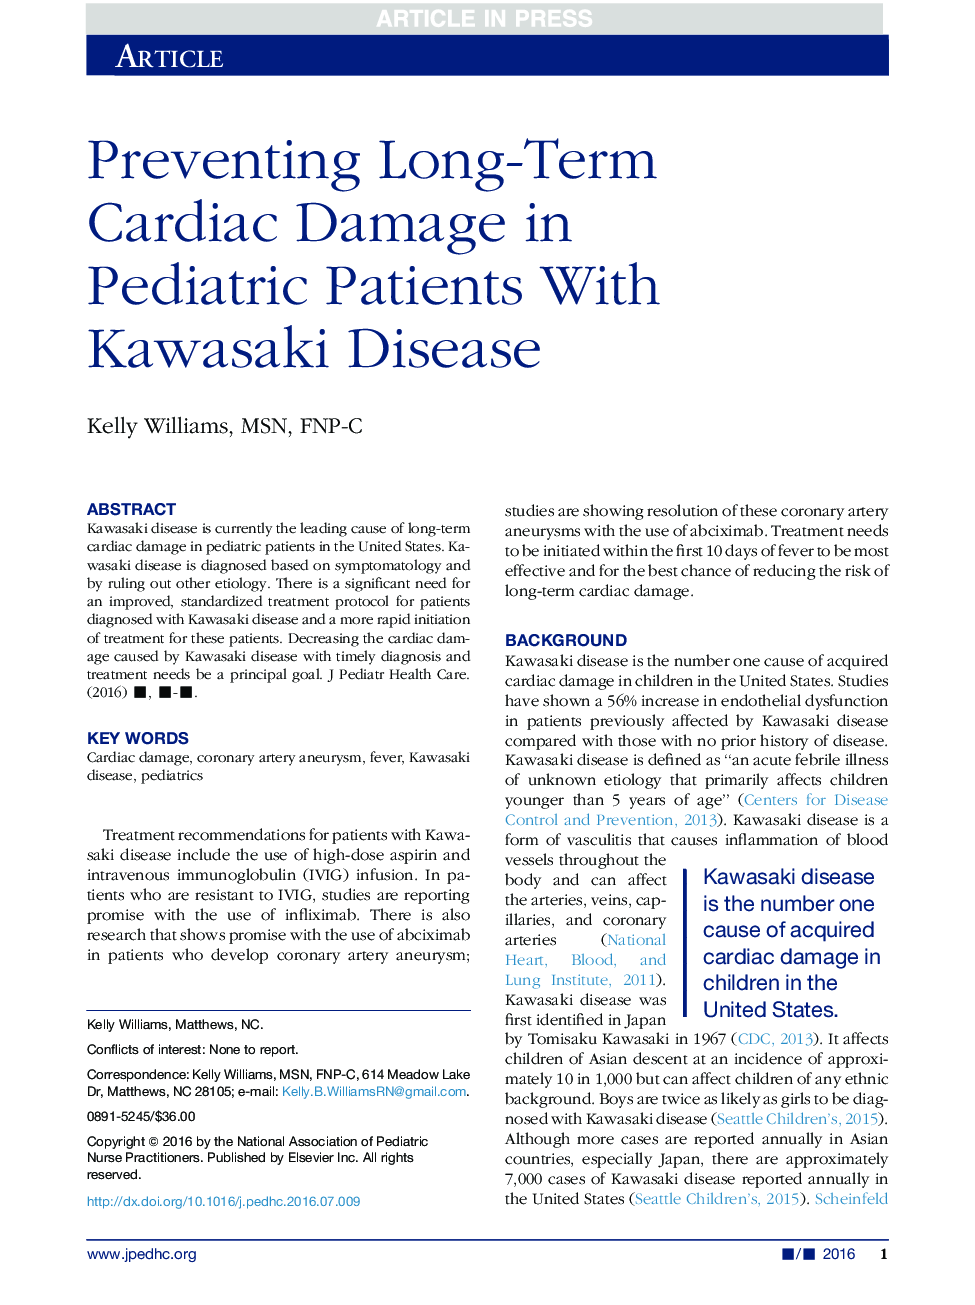 جلوگیری از آسیب های قلبی طولانی مدت در بیماران کودکان با بیماری کاوازاکی 